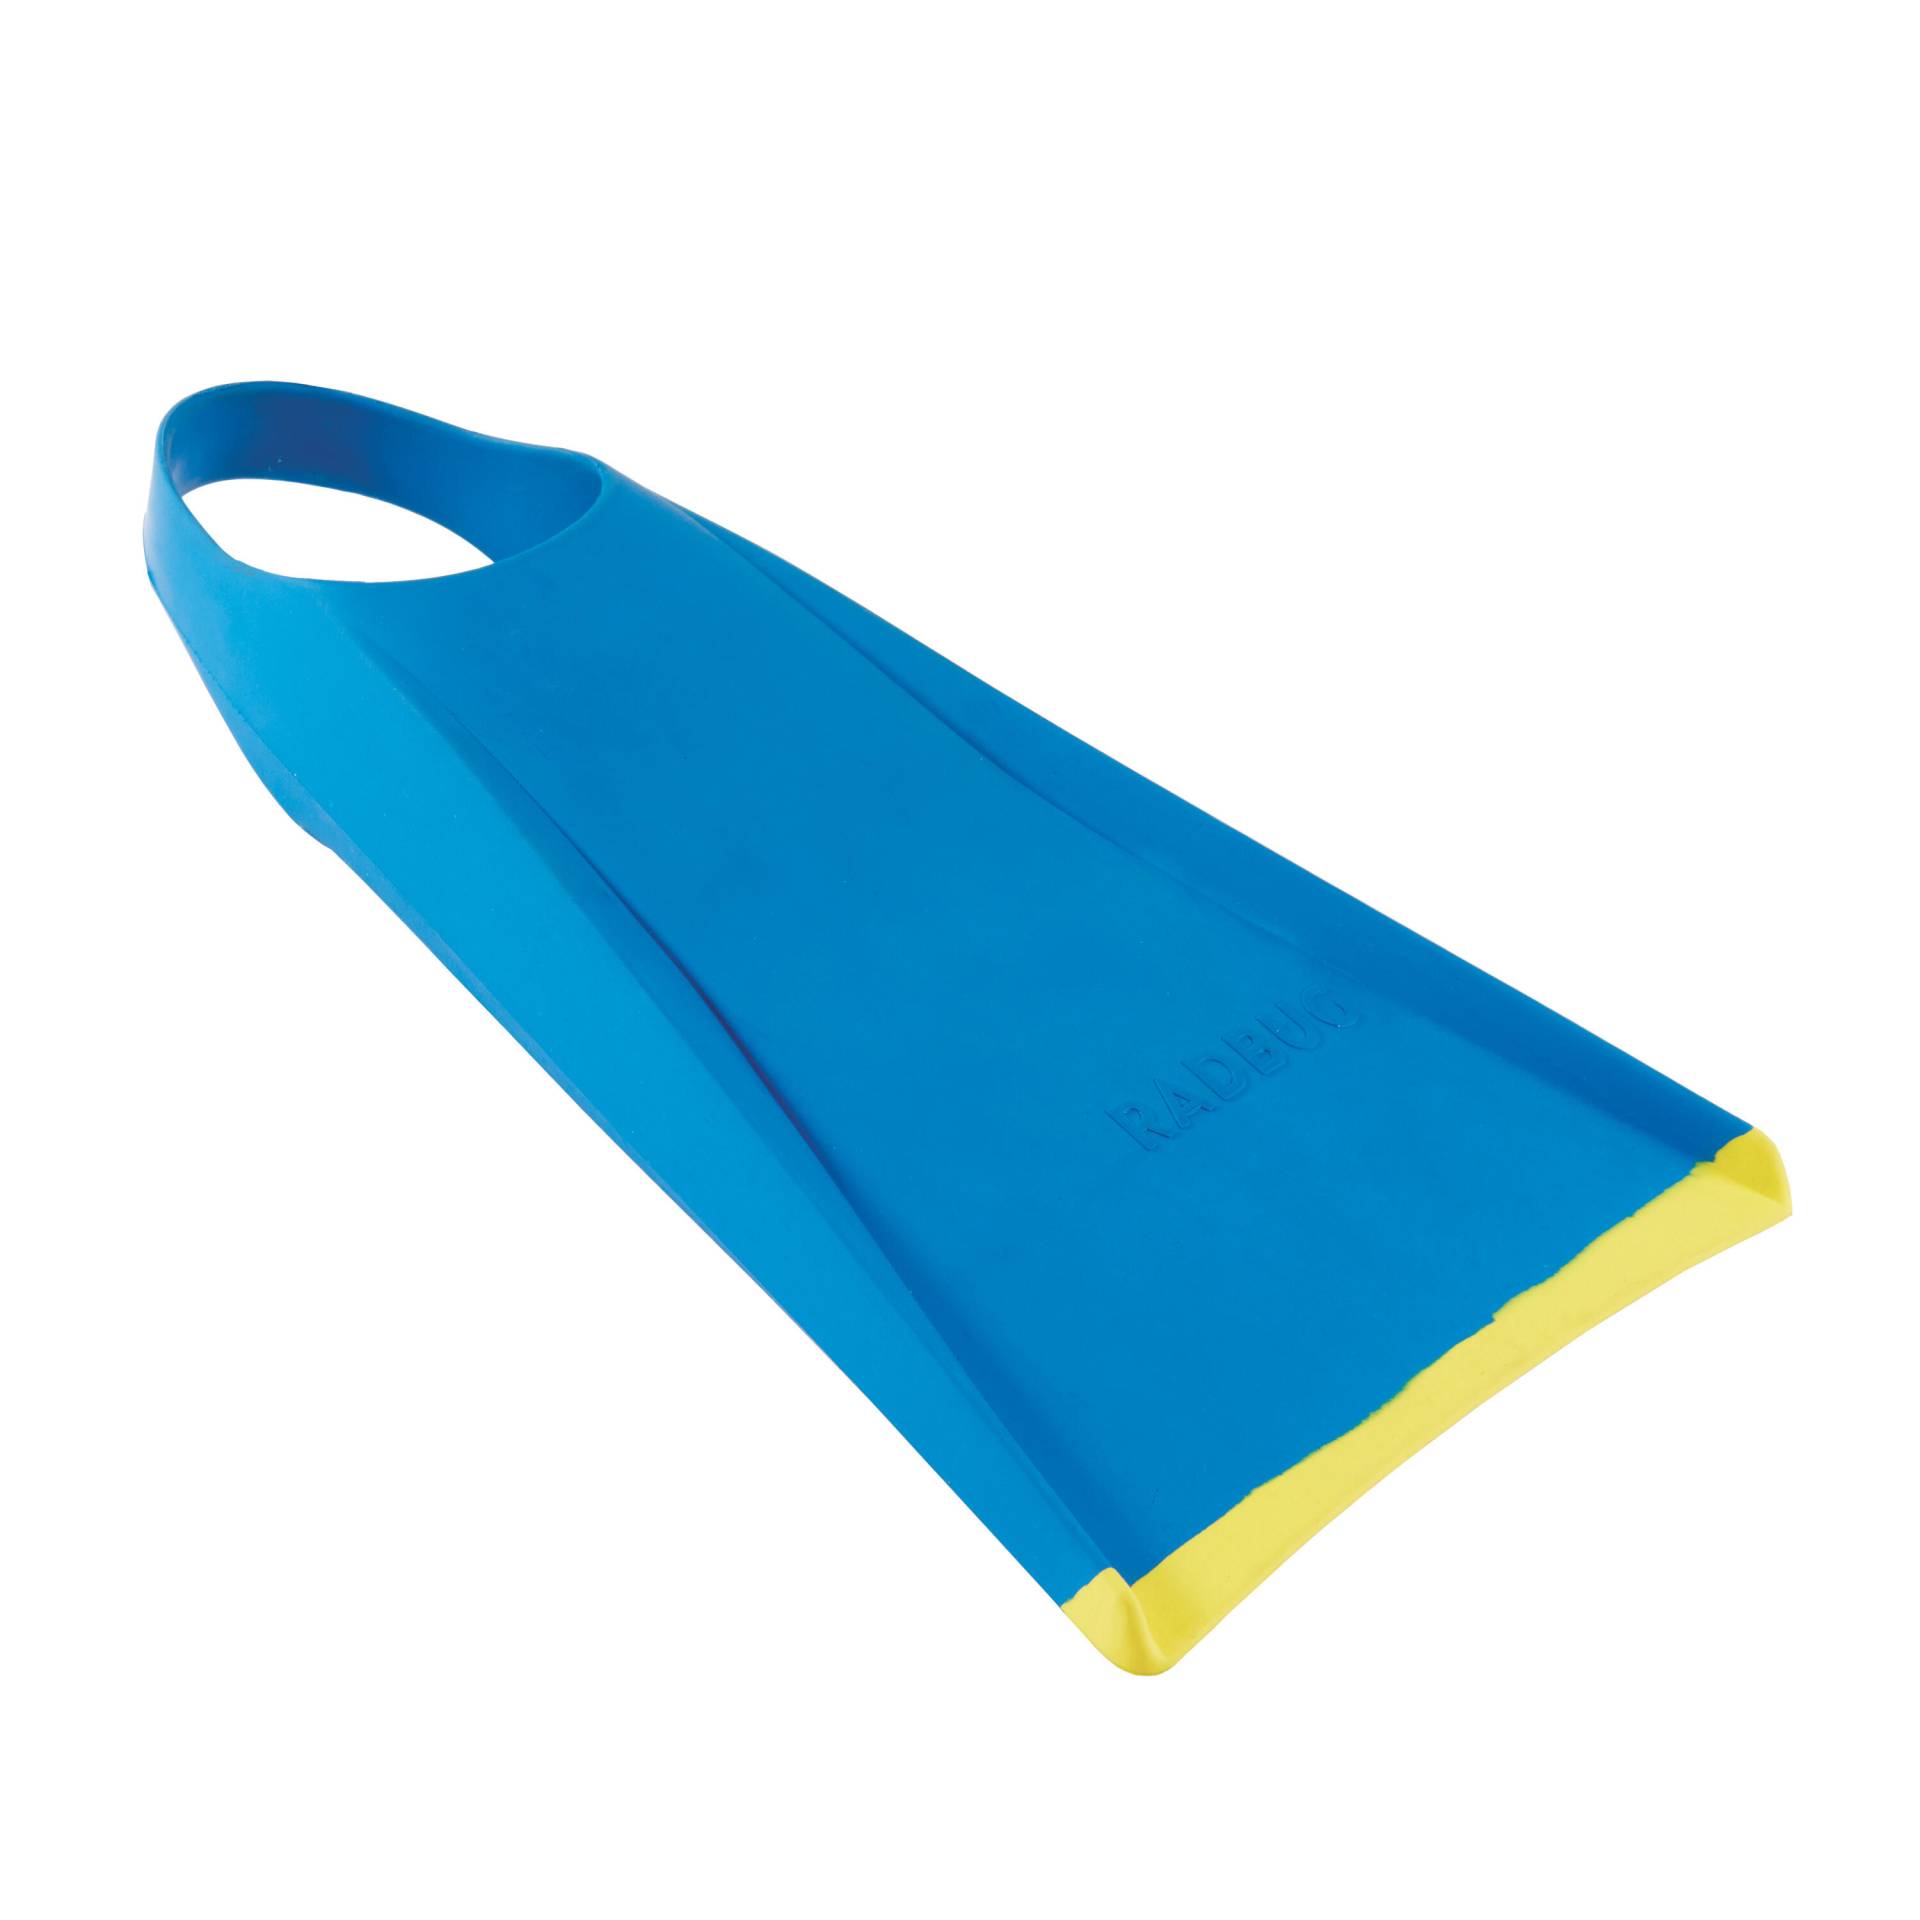 Flossen Bodyboard Ecodesign 100 blau/gelb von RADBUG